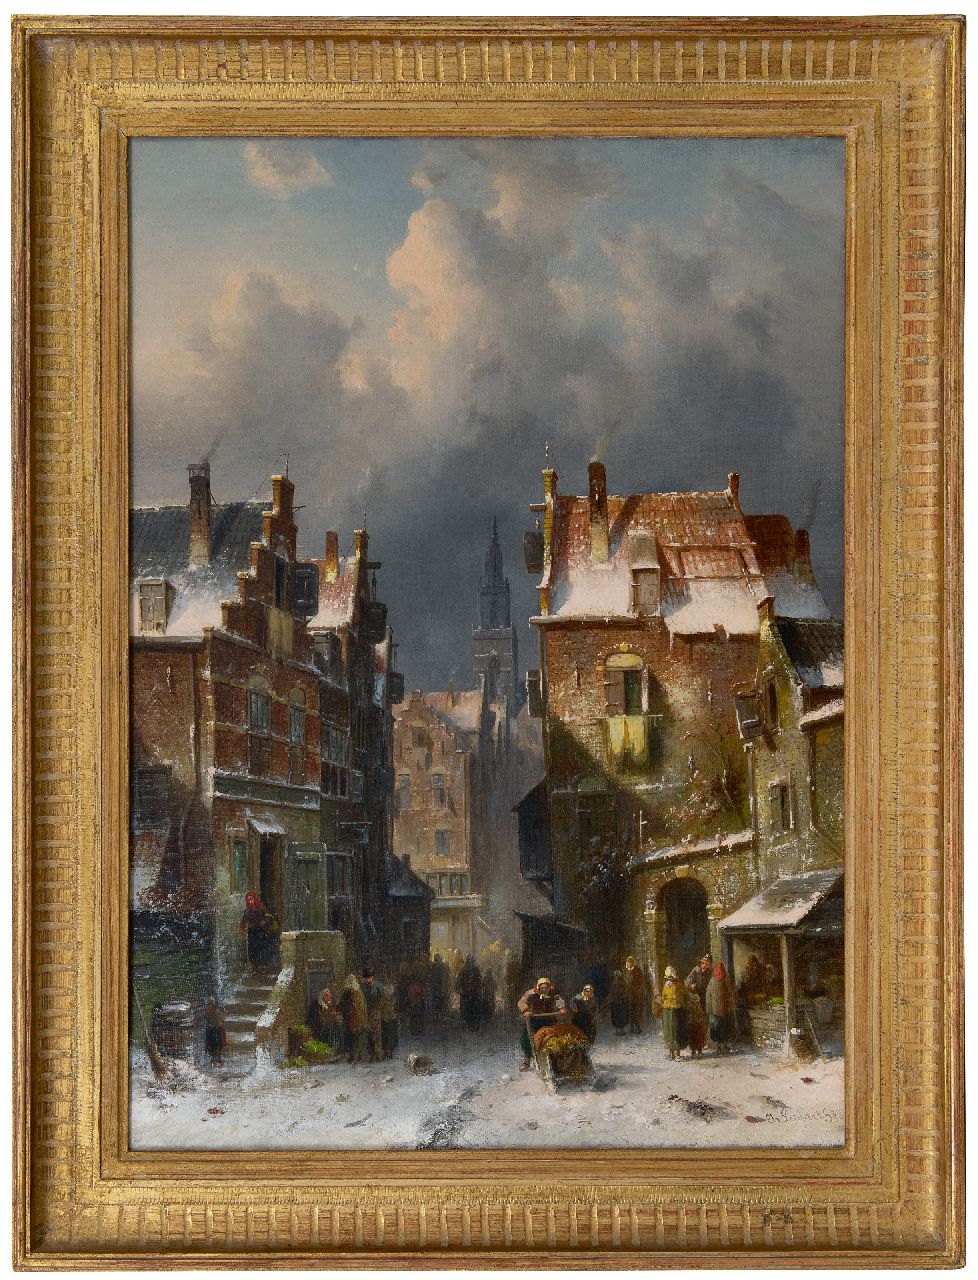 Leickert C.H.J.  | 'Charles' Henri Joseph Leickert | Schilderijen te koop aangeboden | Drukbevolkt straatje in de sneeuw, olieverf op doek 72,7 x 52,0 cm, gesigneerd rechtsonder en gedateerd '88, zonder lijst